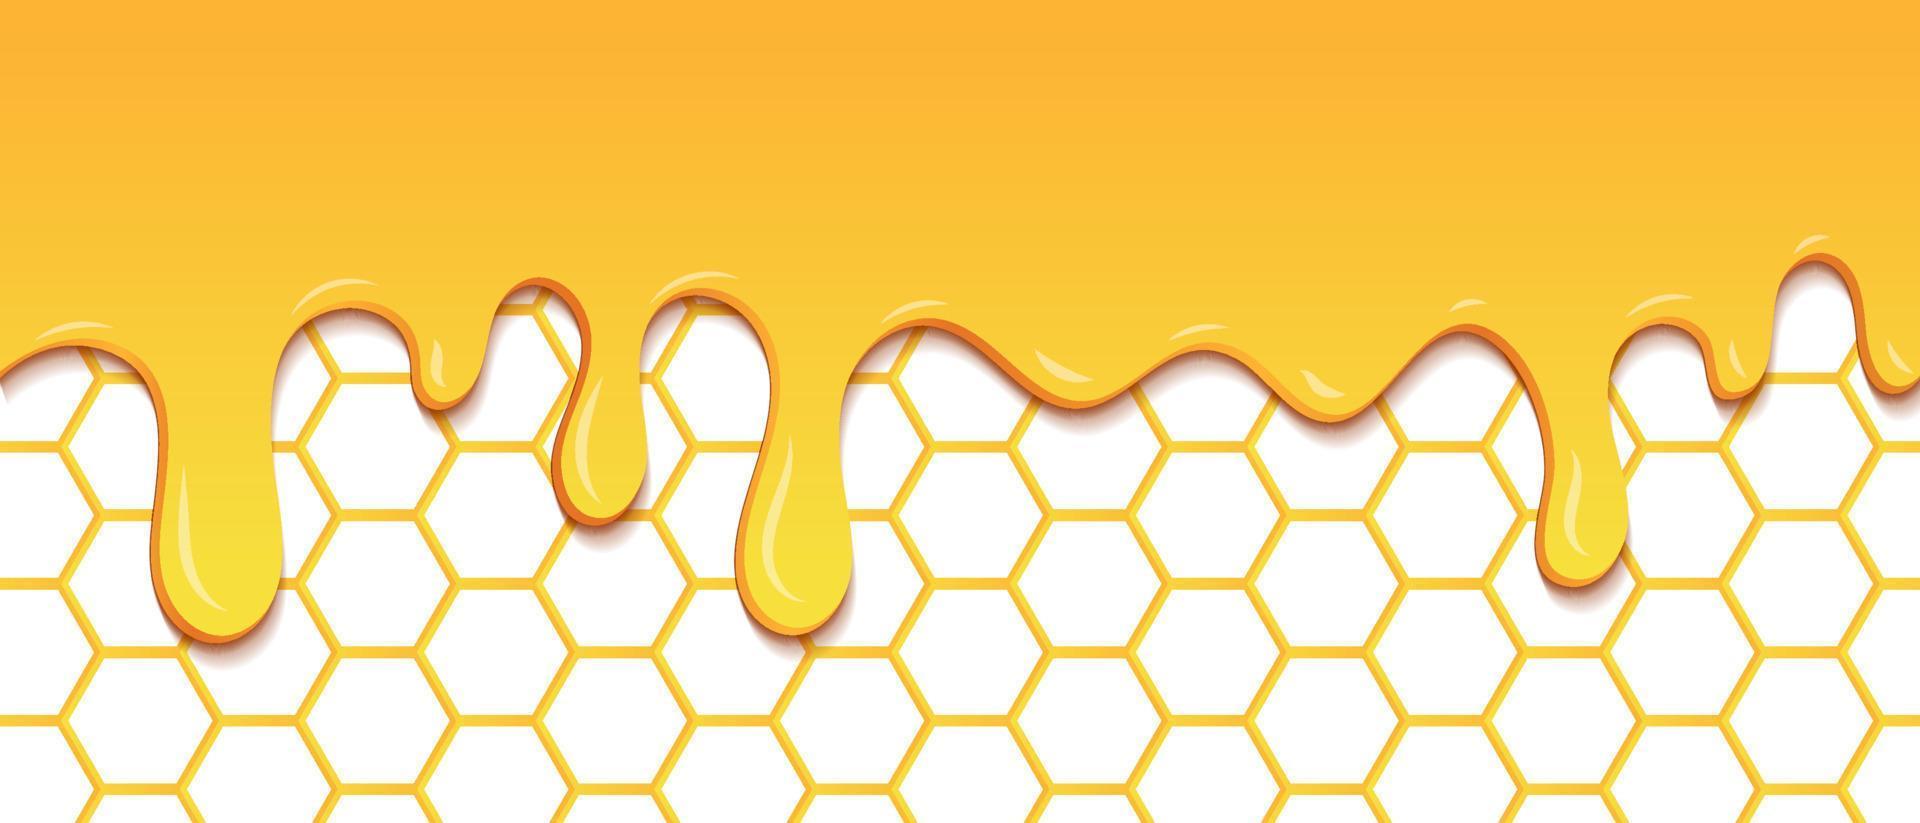 padrão amarelo com gotas de favo de mel e mel. padrão sem emenda de mel pingando. textura perfeita de células hexagonais de mel ouro. ilustração vetorial vetor